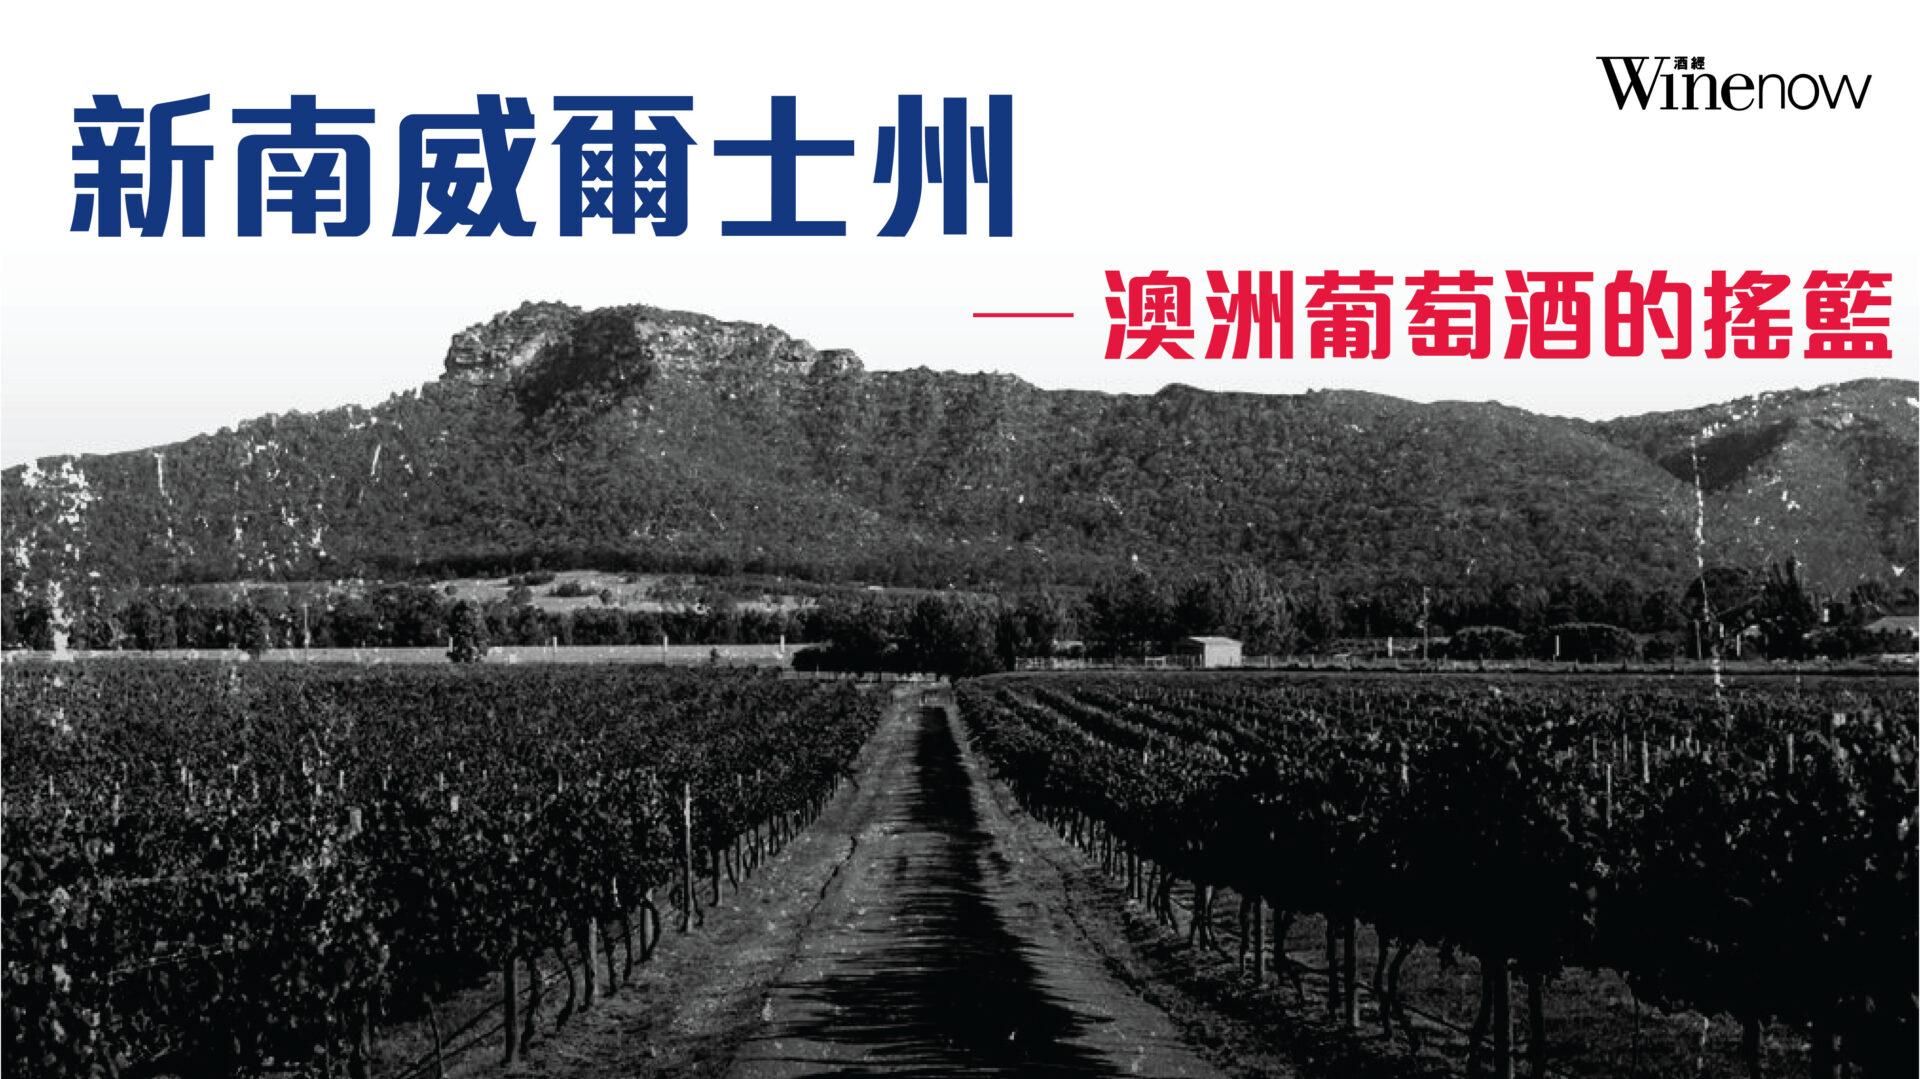 新南威爾士州—澳洲葡萄酒的搖籃 - WineNow HK 專欄文章